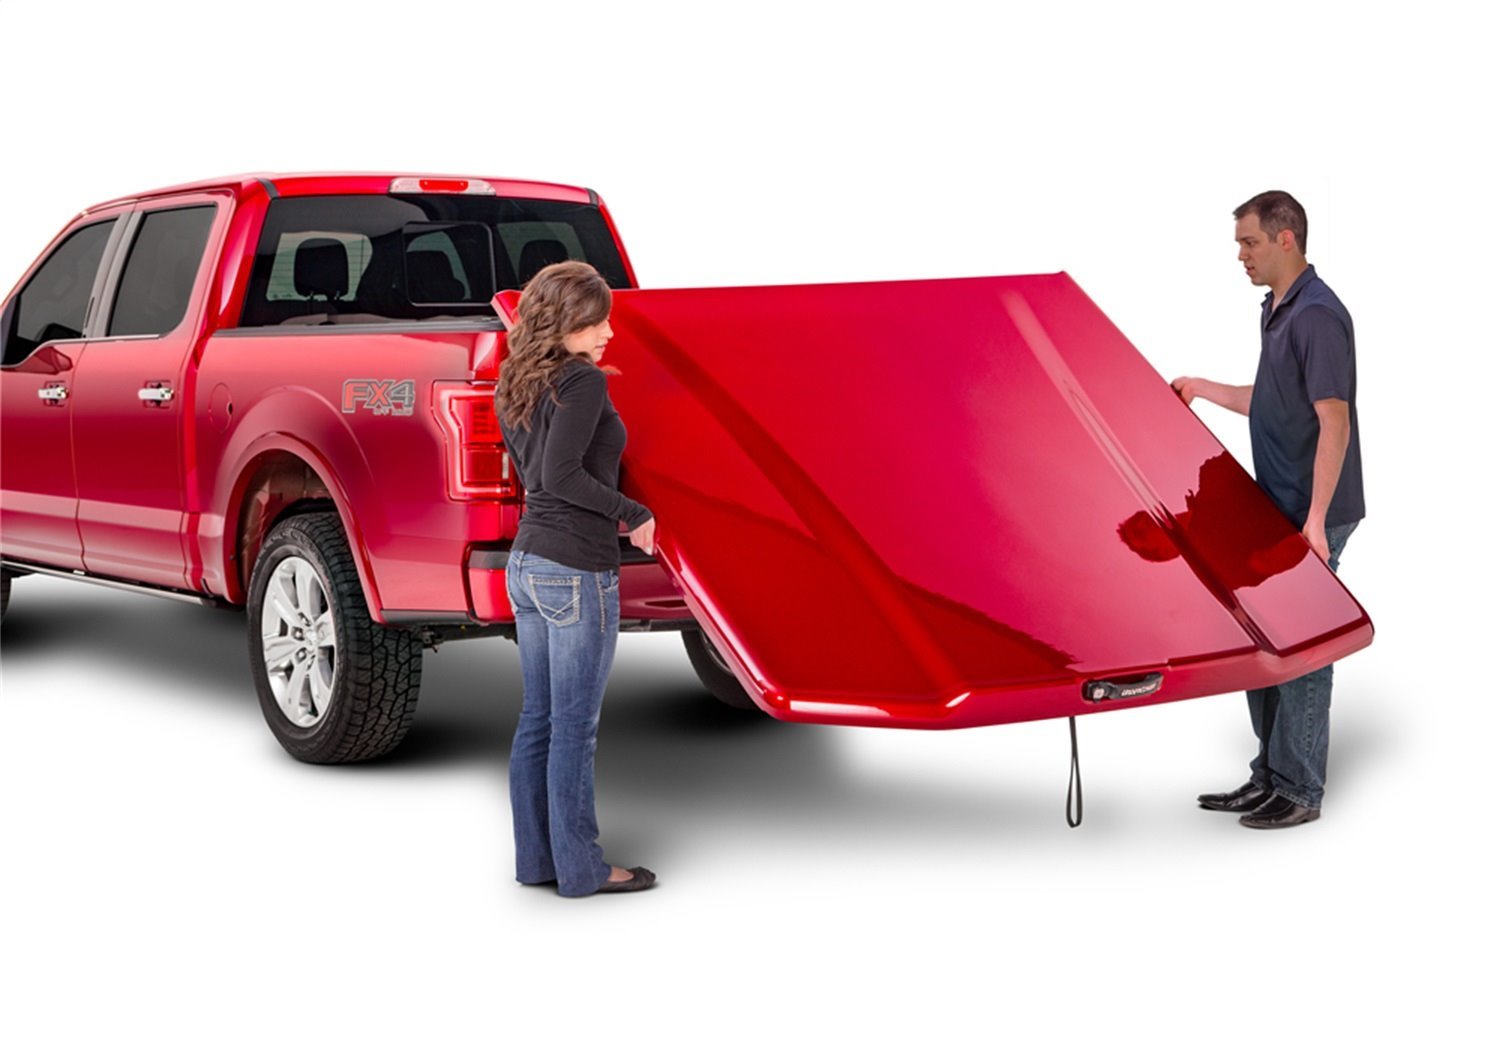 UC3118L-KAR Elite LX Hard Non-Folding Cover, Select Ram 1500 6'4" Bed, Quad/Mega Cab, KAR Maximum Steel